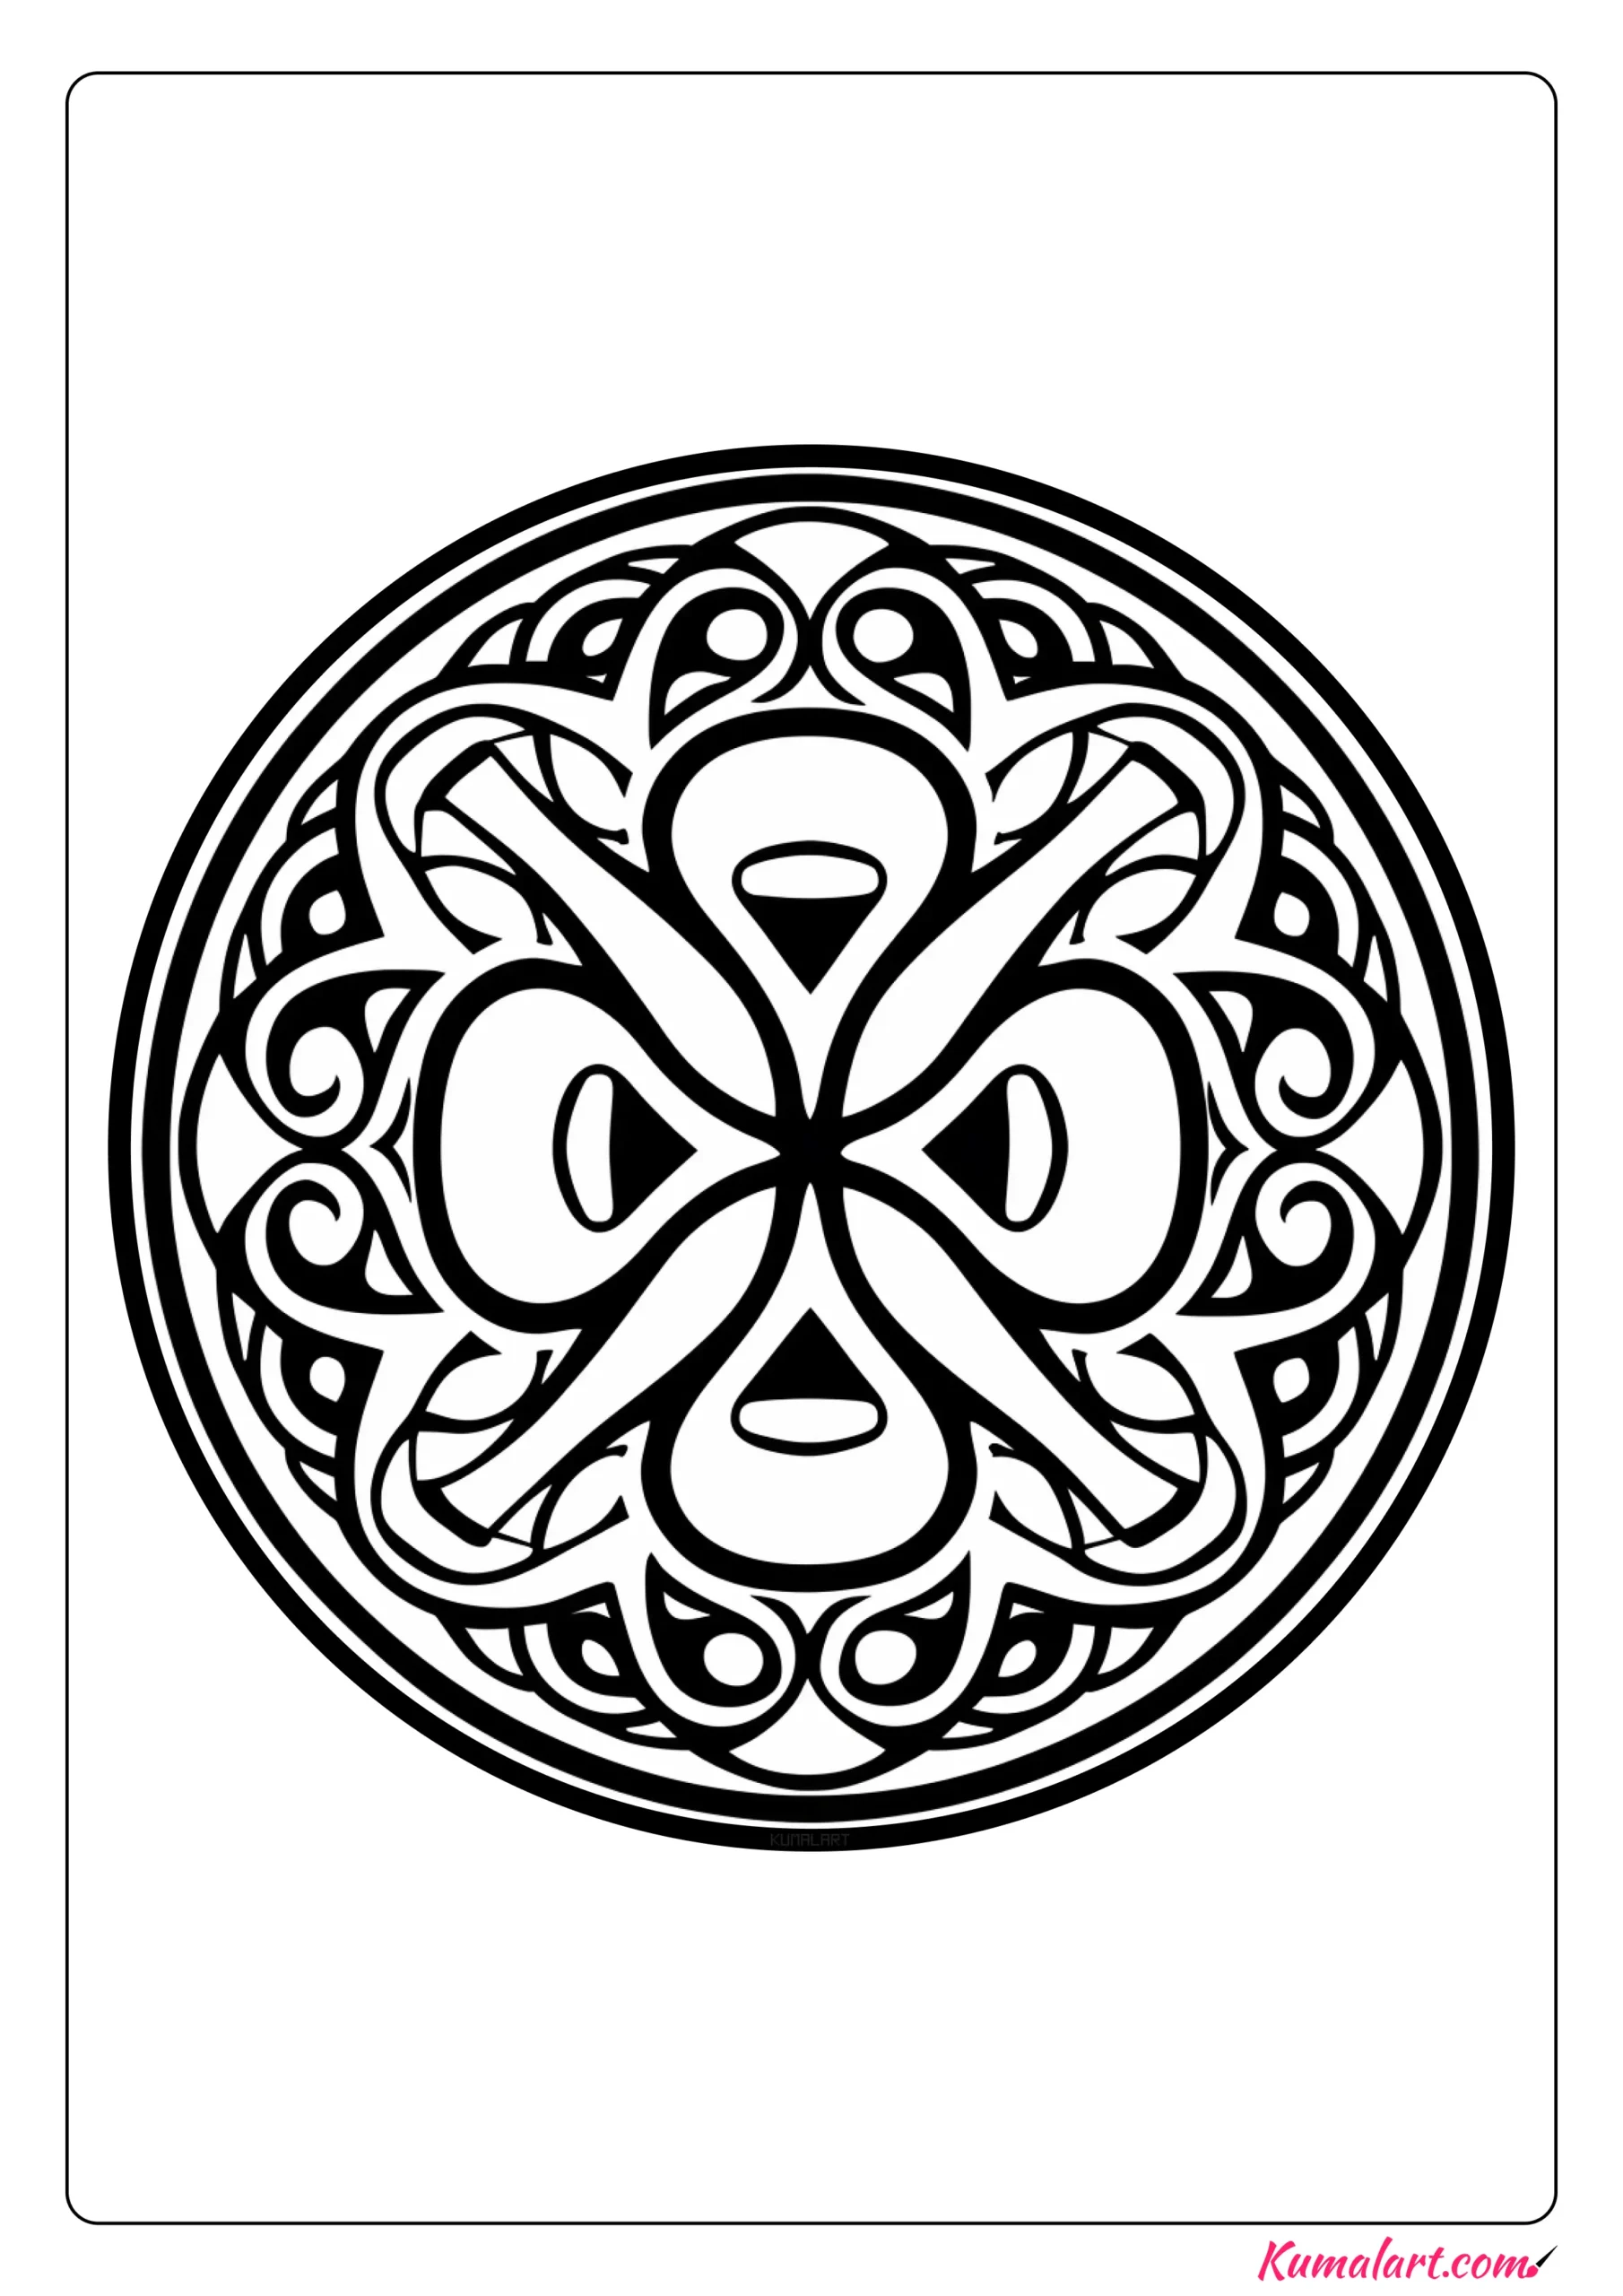 Abstract Shamrock St Patrick’s Day Mandala Coloring Page